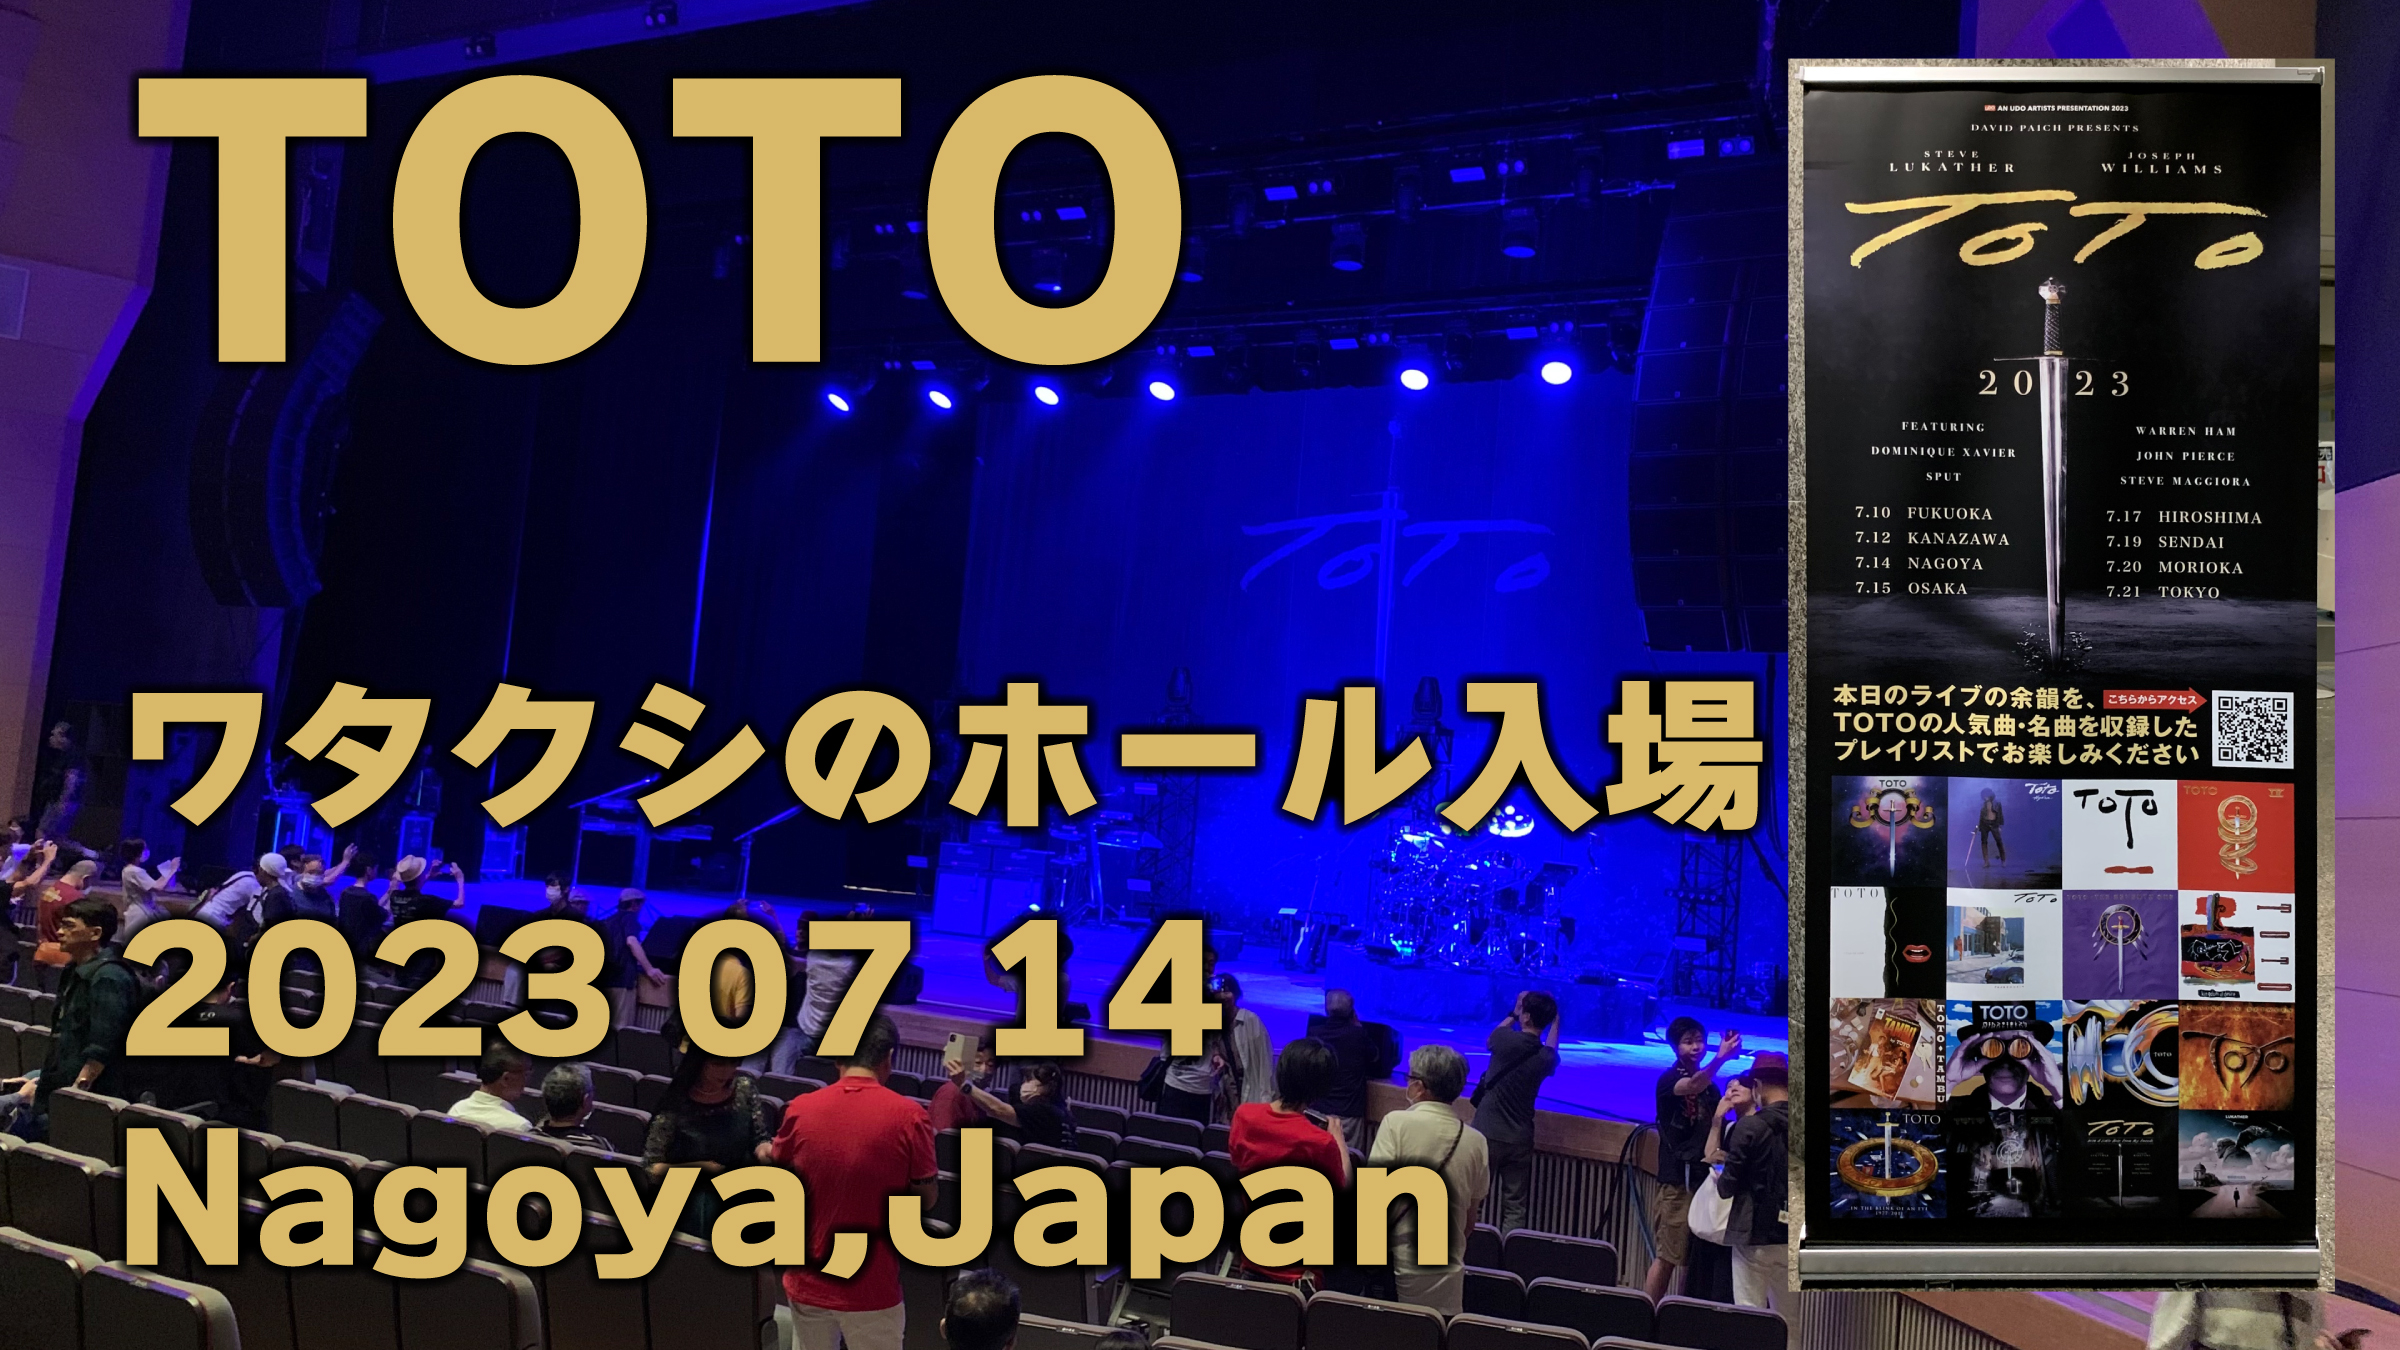 多分どうでもイイ動画（笑） TOTO ワタクシのホール入場！！（爆笑） youtu.be/TEWbAJ9tuP0 #TOTO #DogzOfOzTour2023 #TOTOJapanTour2023 #Show3 #Nagoya #名古屋 #SteveLukather #JosephWilliams